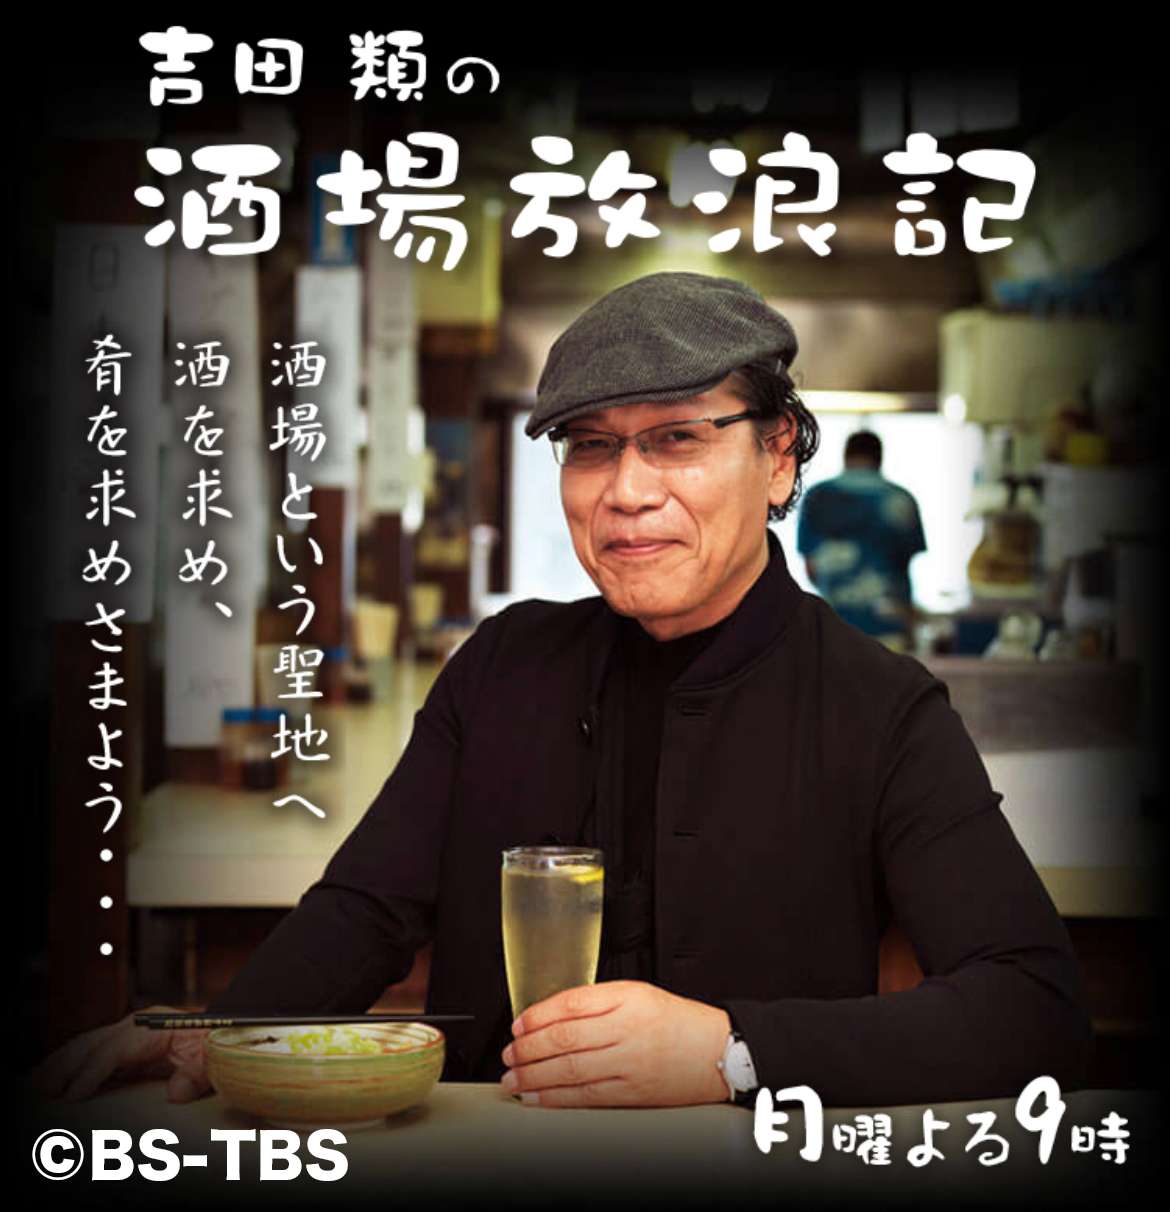 BS-TBS 「吉田類の酒場放浪記」